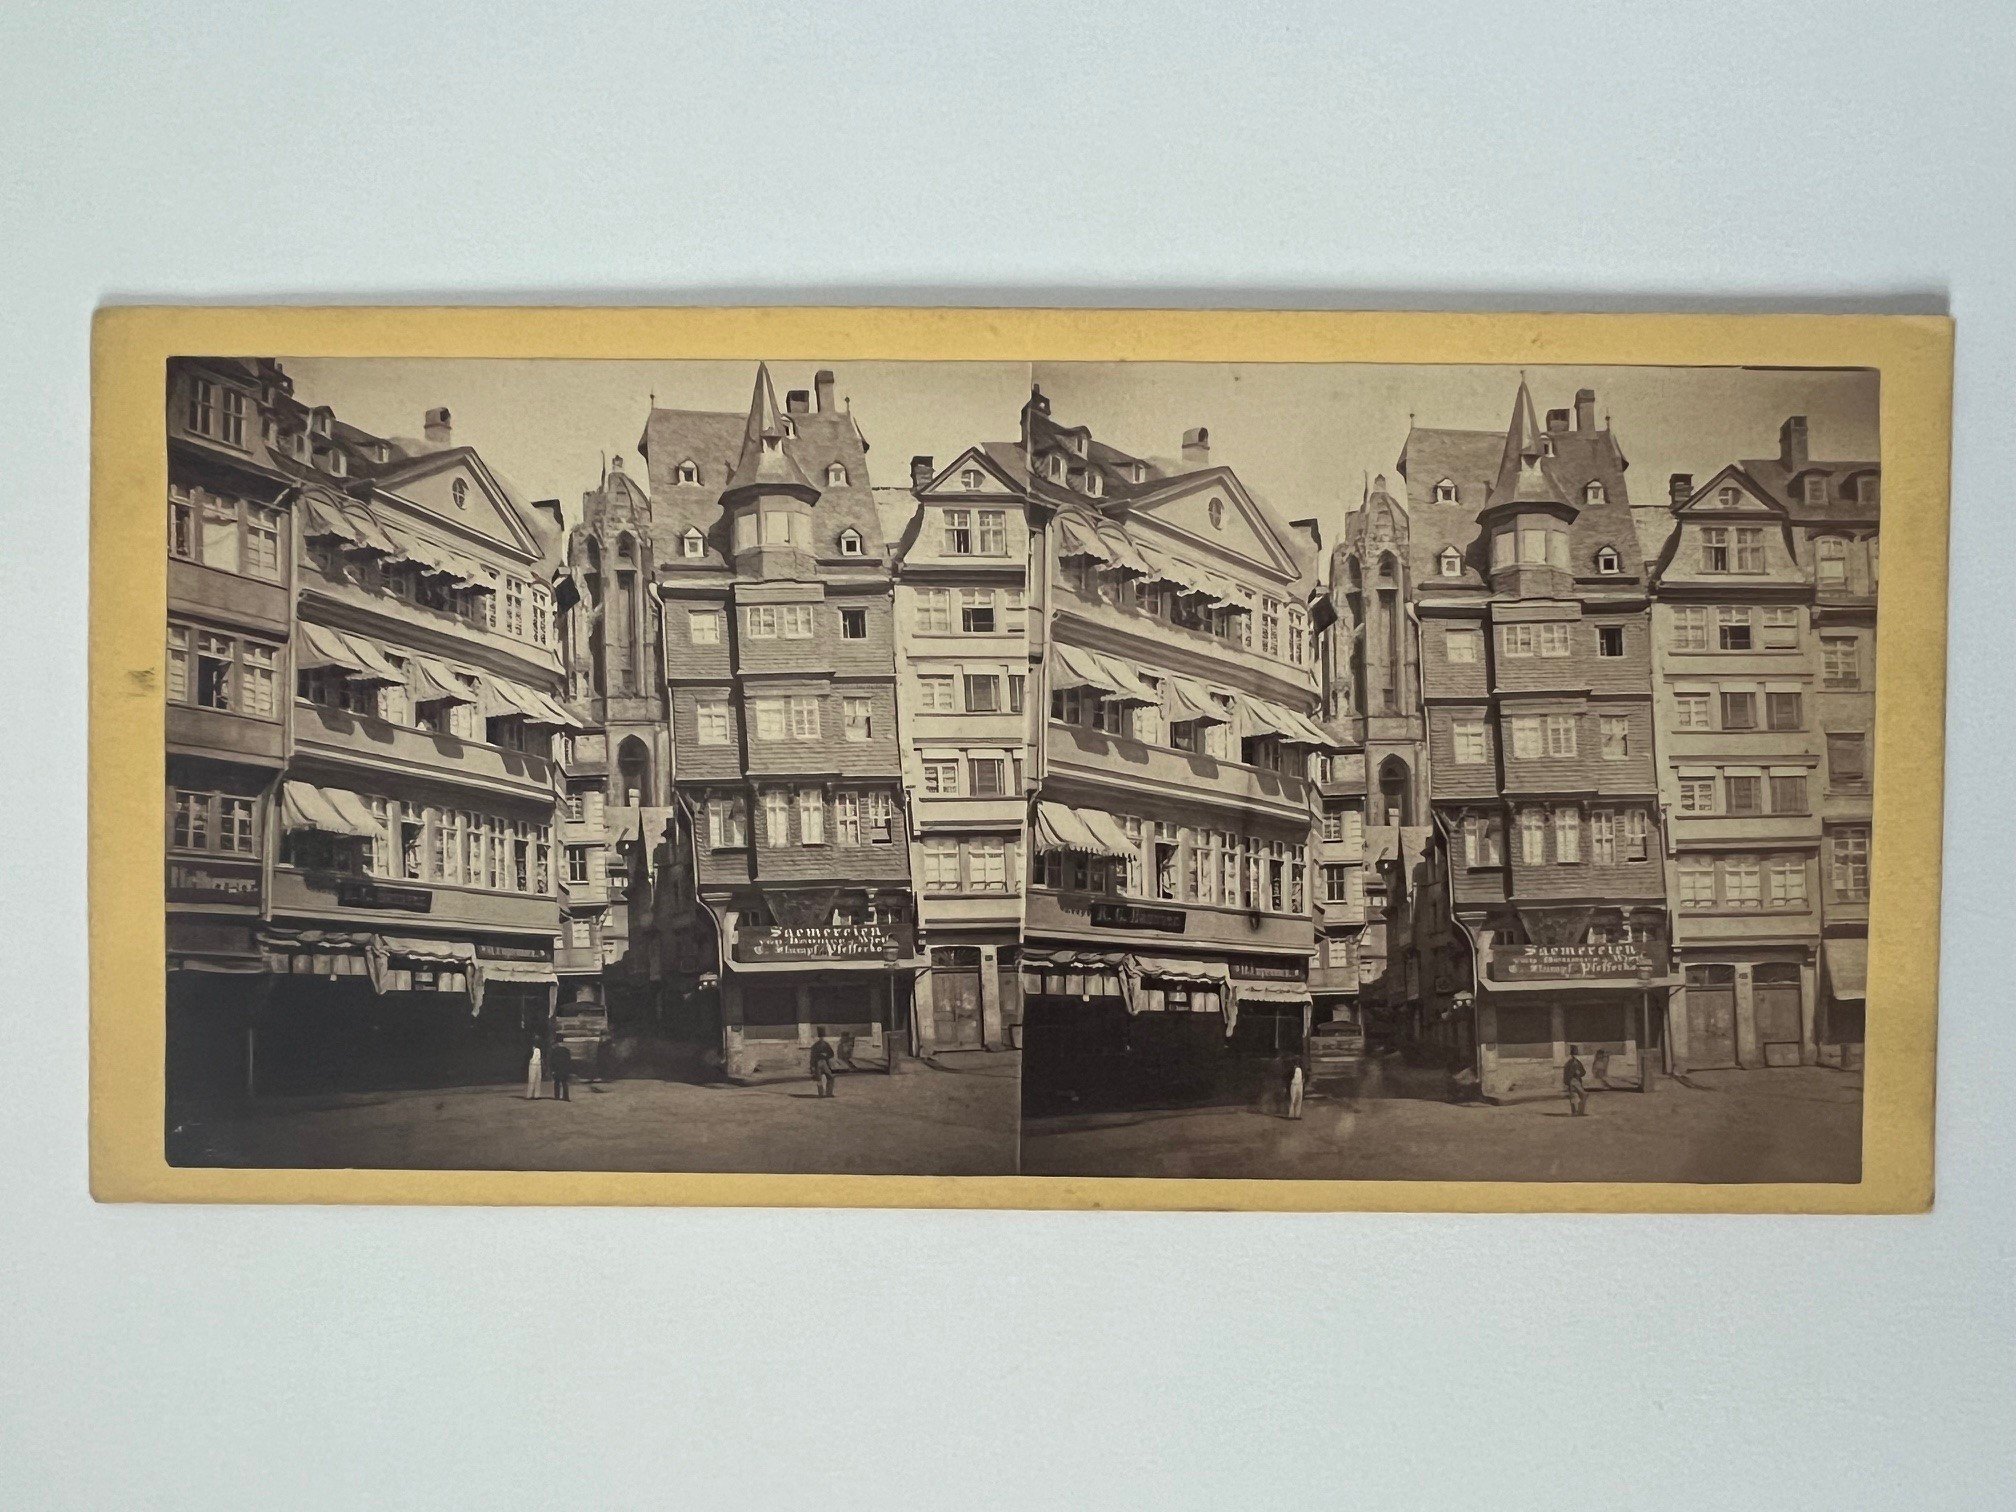 Stereobild, Unbekannter Fotograf, Frankfurt, Römerberg, ca. 1865. (Taunus-Rhein-Main - Regionalgeschichtliche Sammlung Dr. Stefan Naas CC BY-NC-SA)